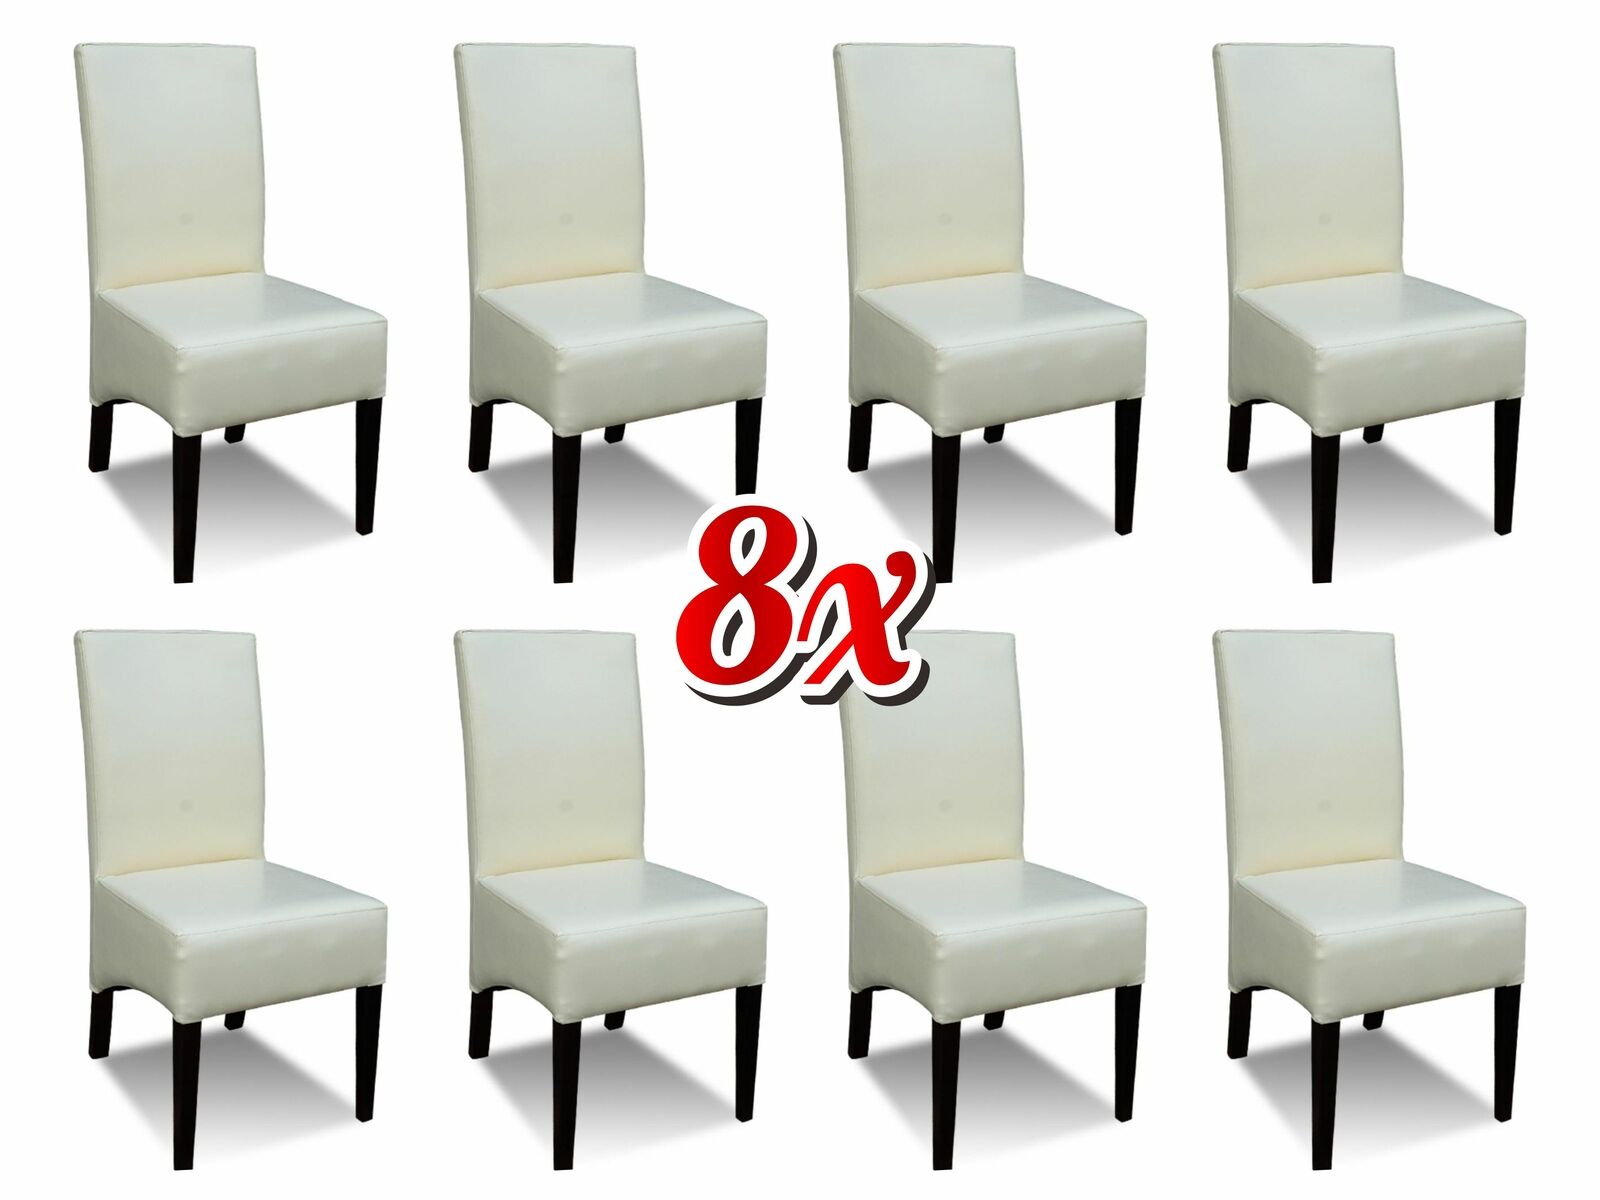 Garnitur Lounge Club Sessel Komplett Set Neu Gruppe 8x Stuhl Lehnstuhl Stühle